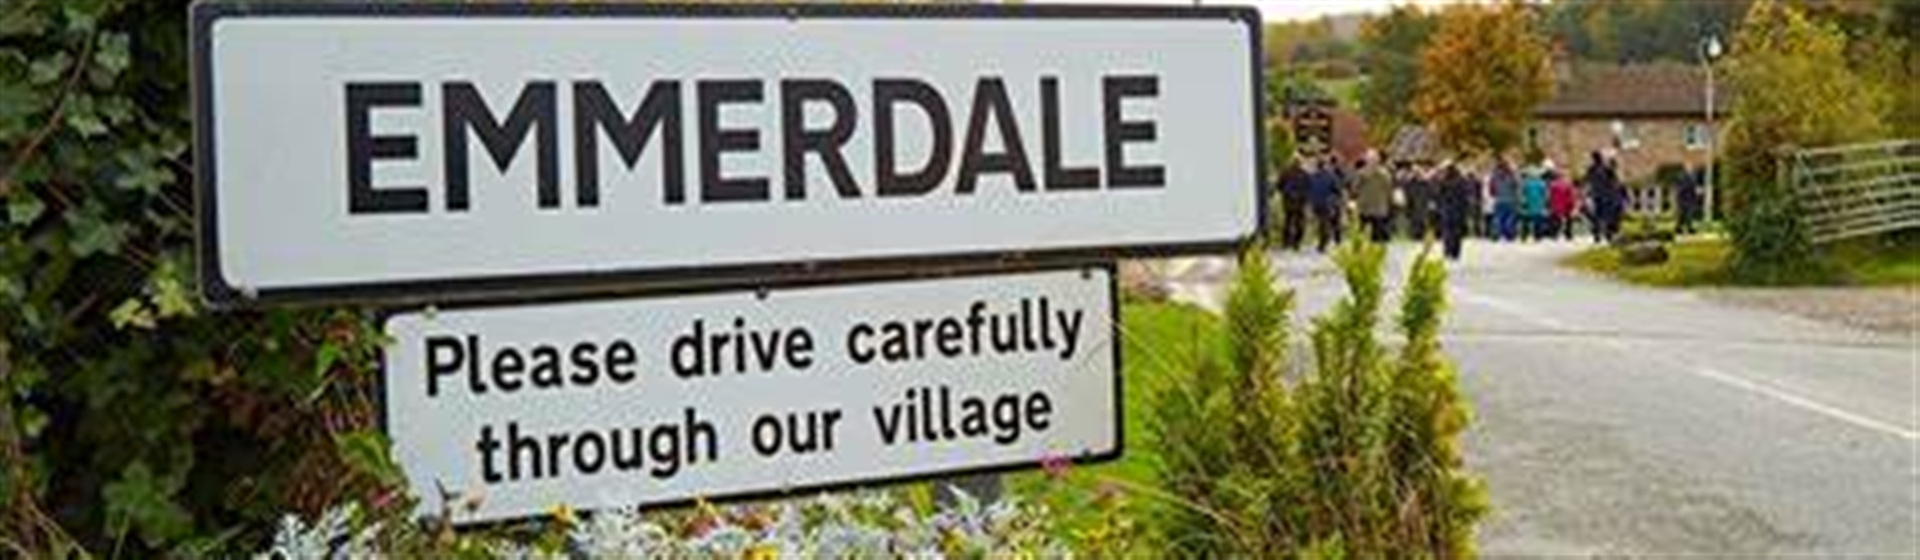 Emmerdale Village 